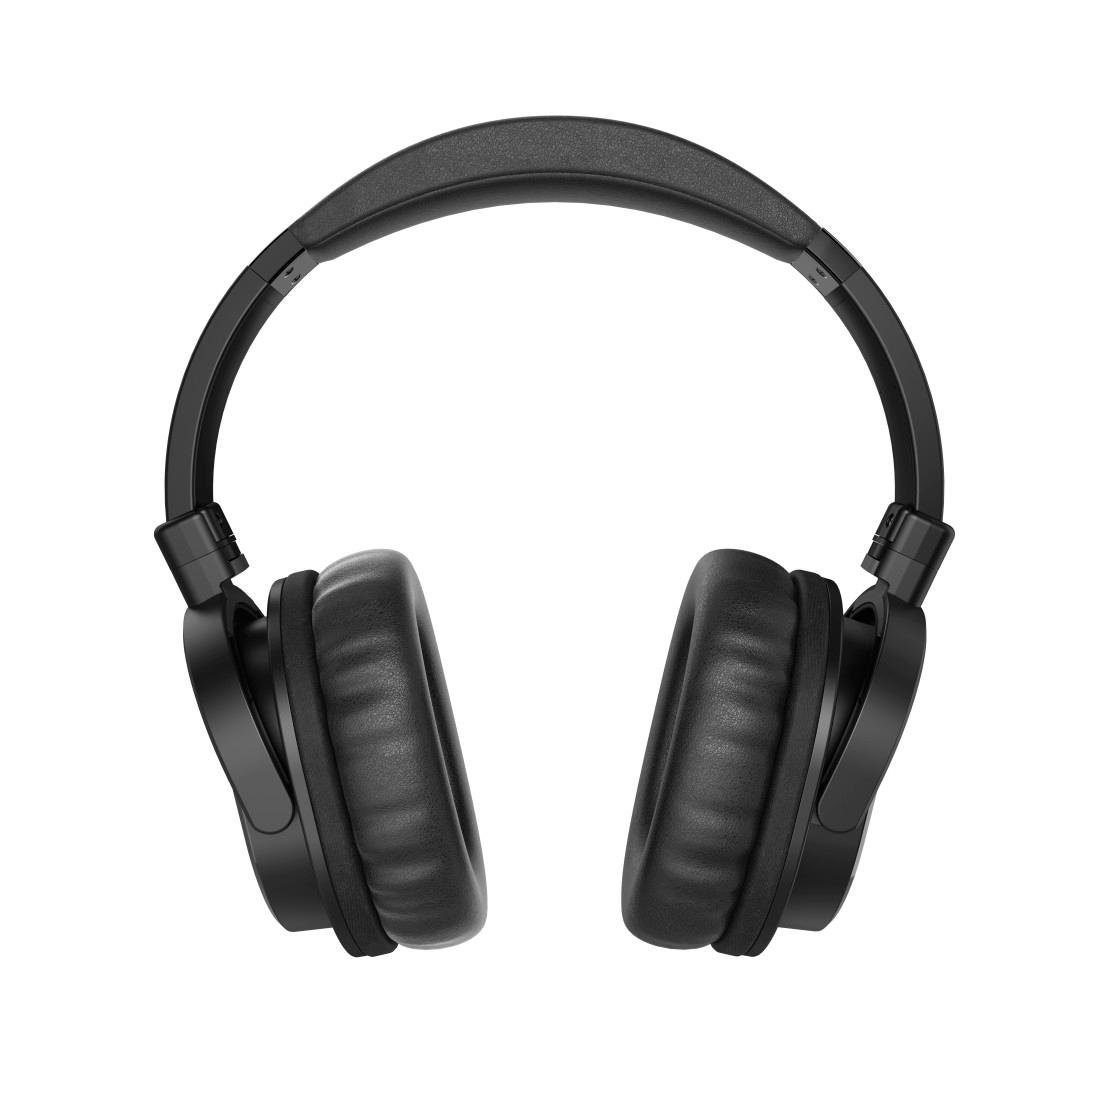 Mikrofon, Over-Ear Lautstärkeregler, und Kopfbügel) Headset Ohrmuscheln langes mit (2 Seniorenkopfhörer, TV On-Ear-Kopfhörer Thomson gepolsterte Kabel